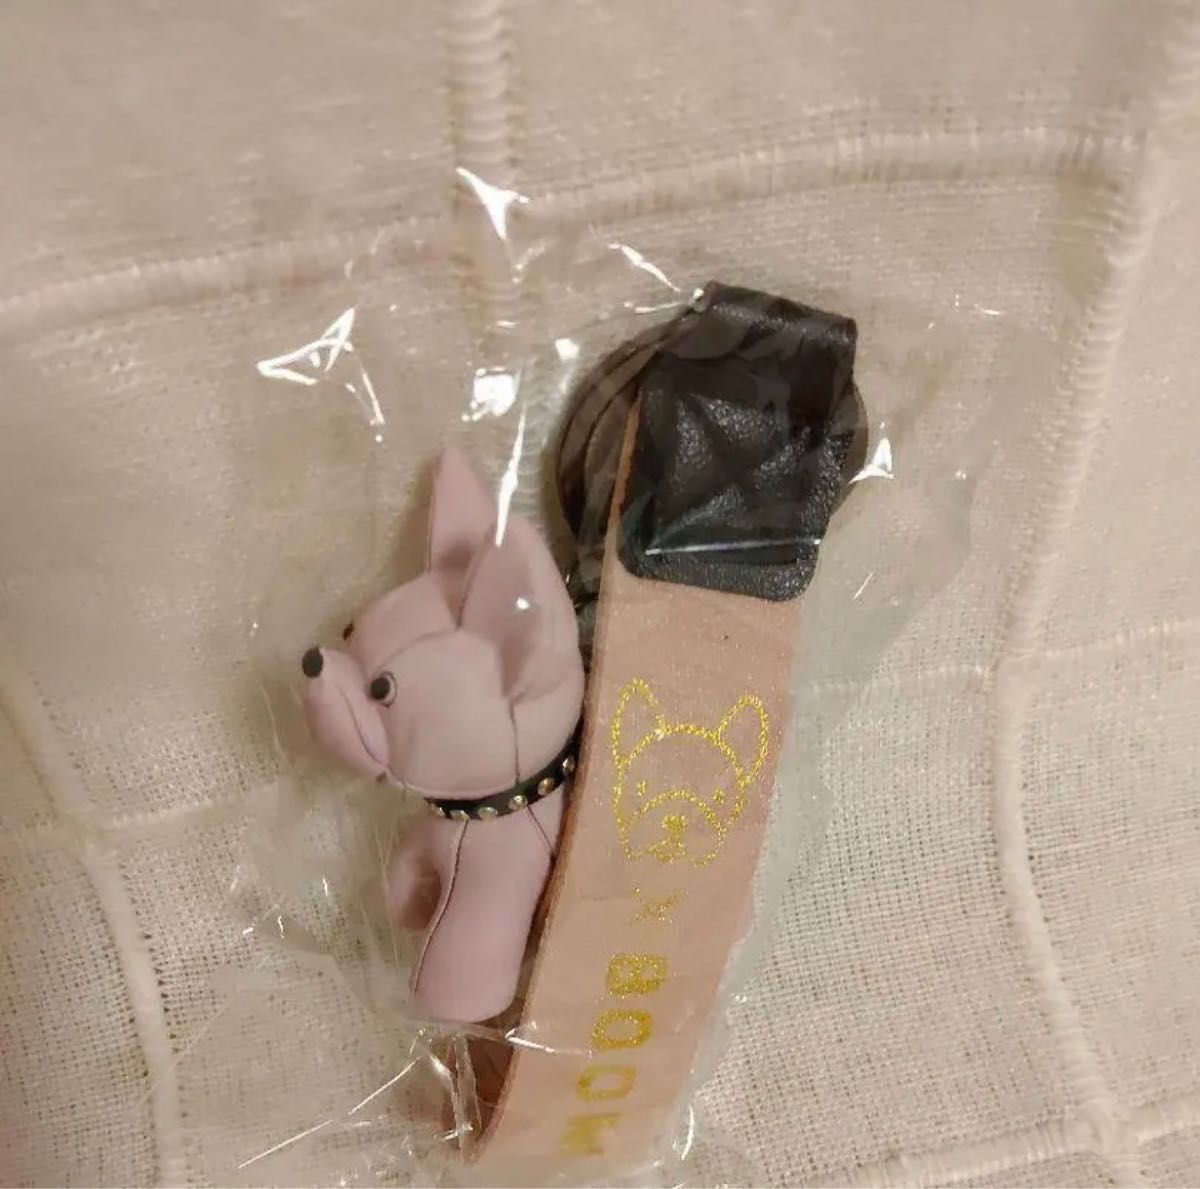 【新品・未使用】犬 バッグチャーム キーリング アクセサリー ピンク